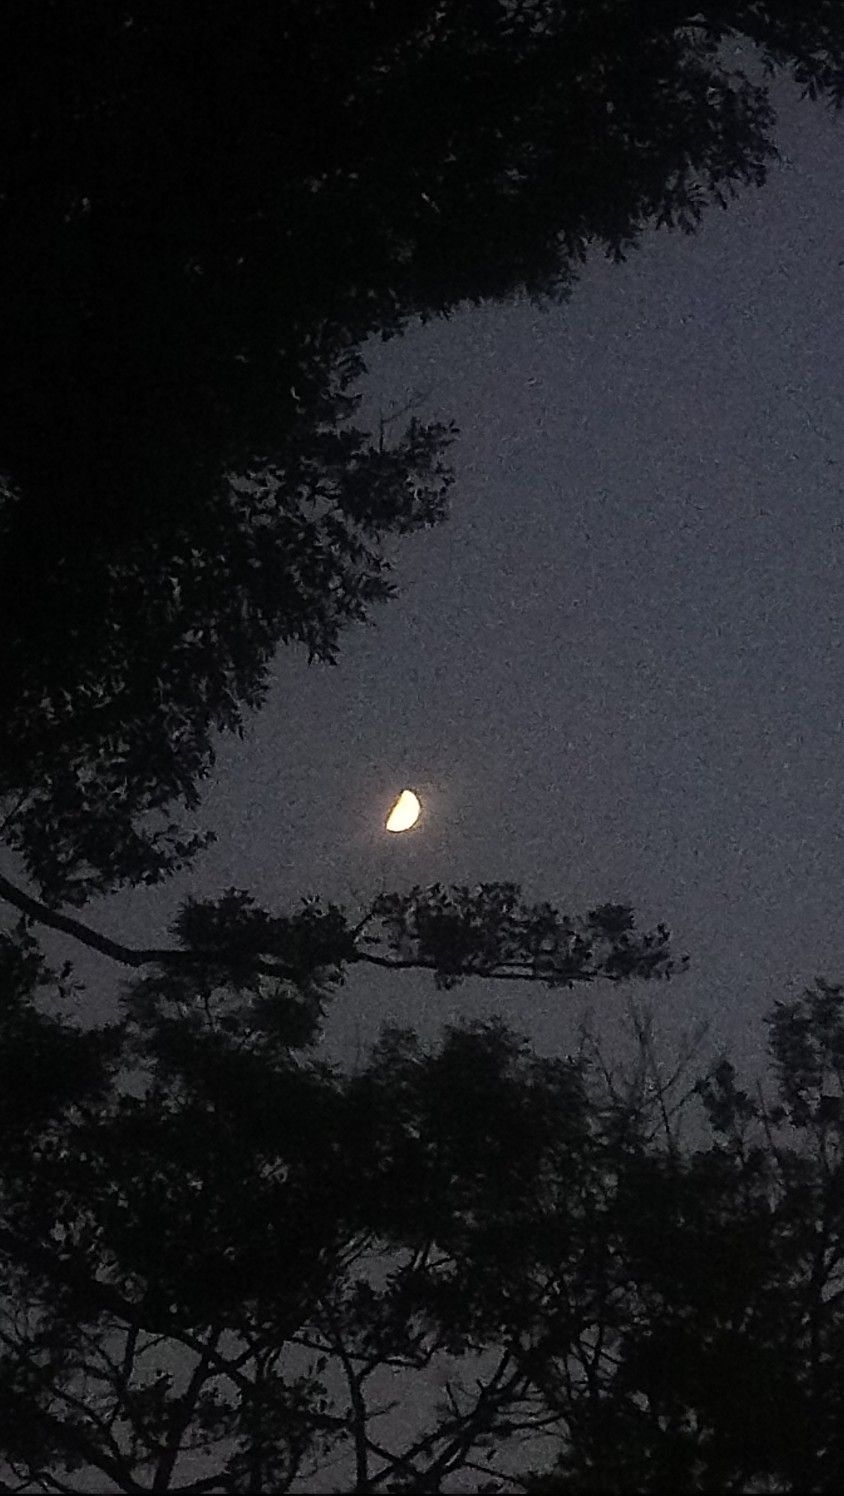 A crescent moon between trees - Sky